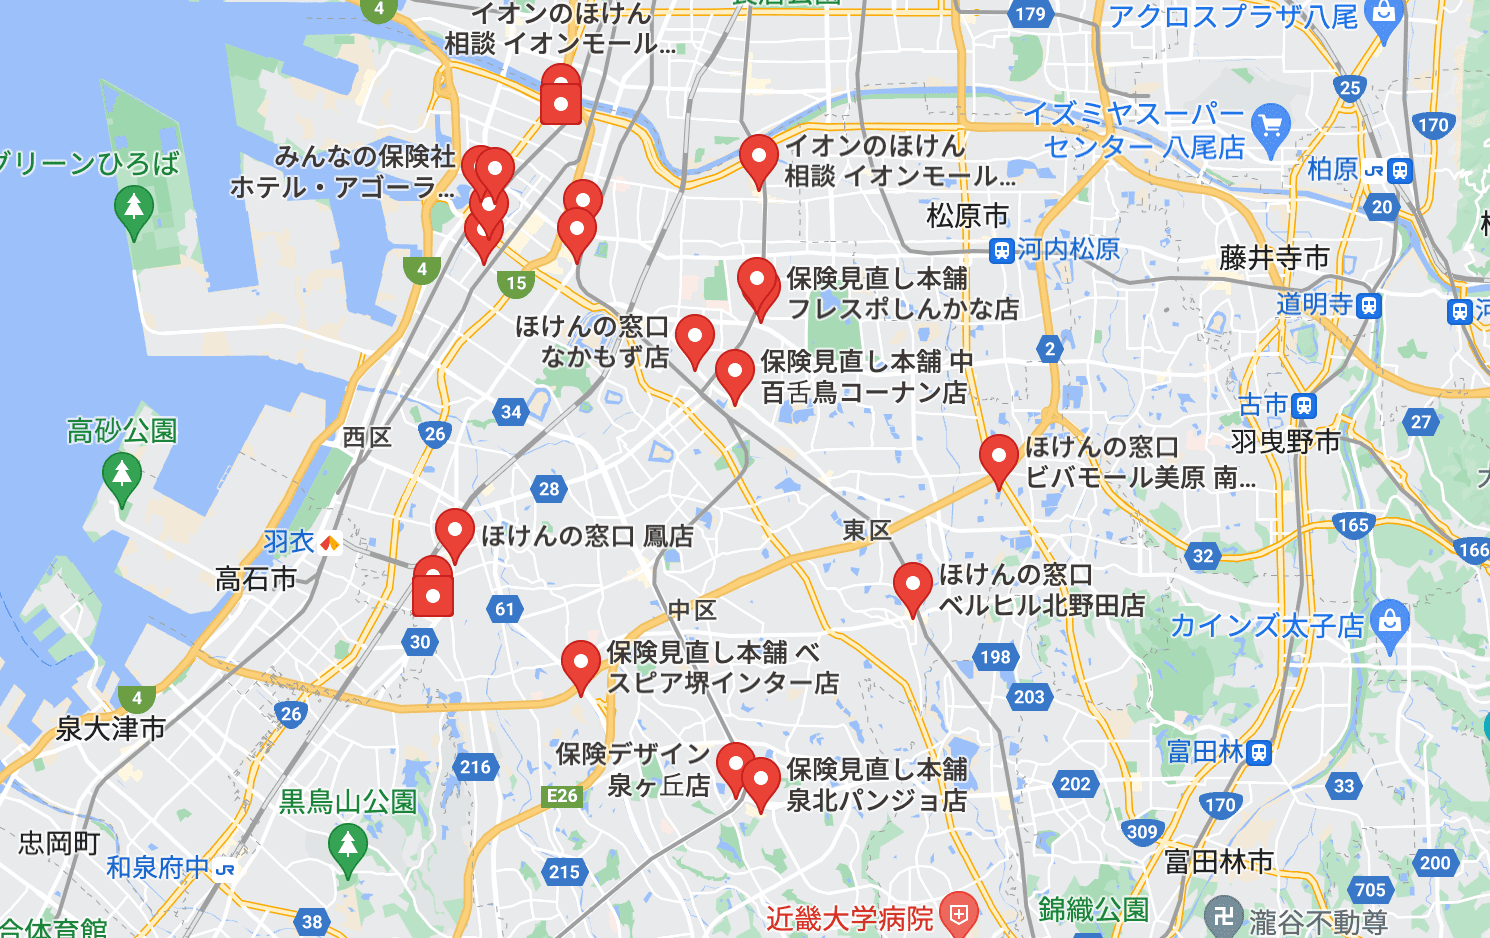 大阪府堺市 無料保険相談 見直しのおすすめ店舗を口コミから比較